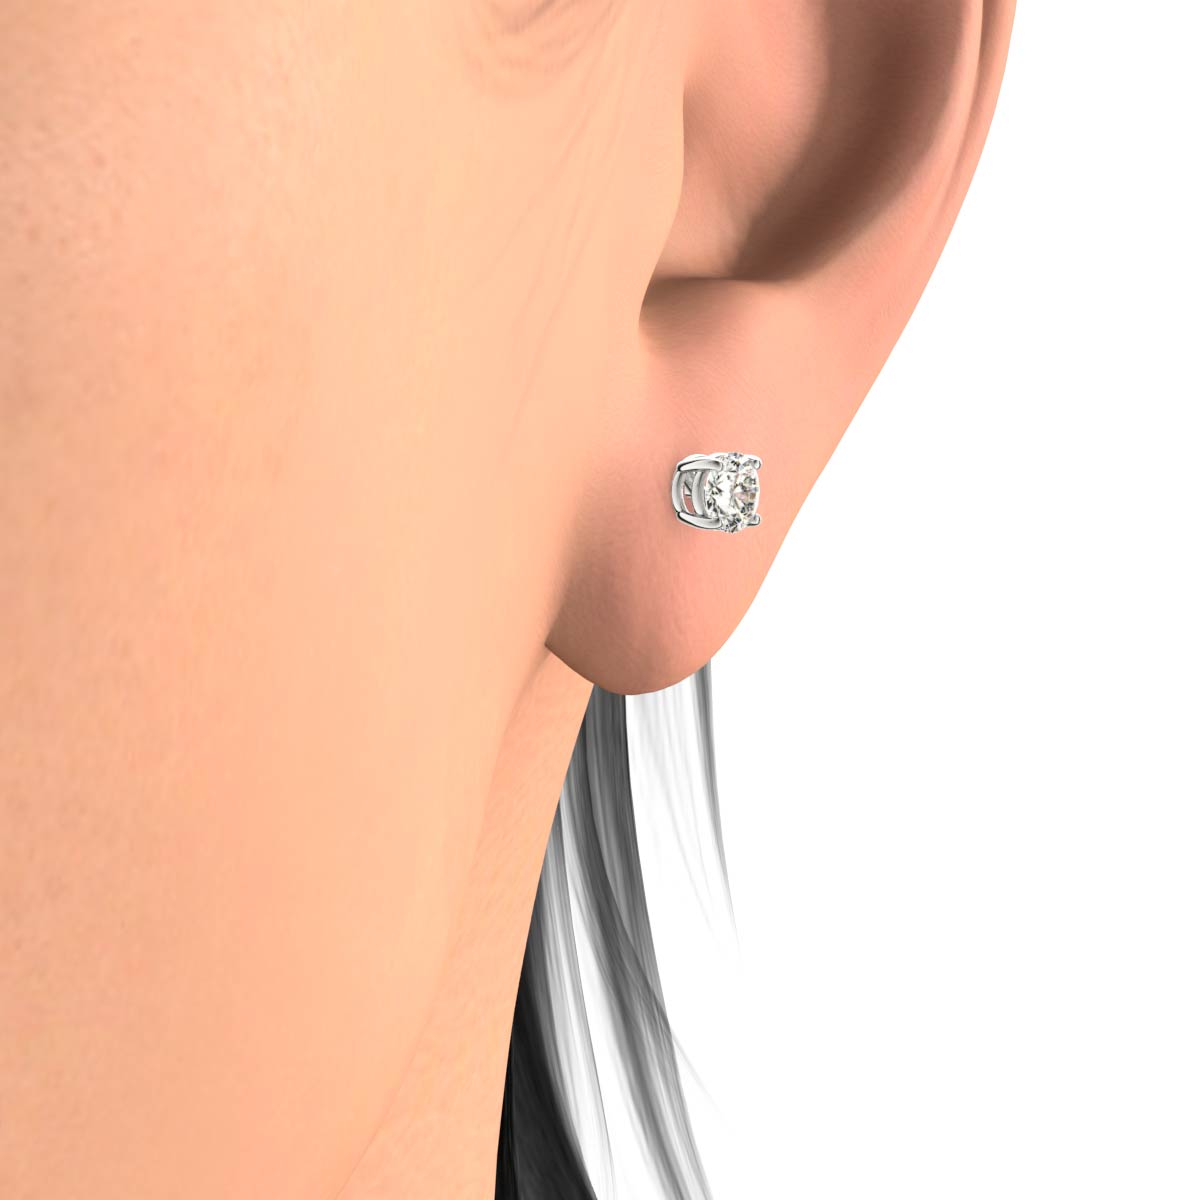 1/3 ctw 14k White Gold Diamond Stud Earrings